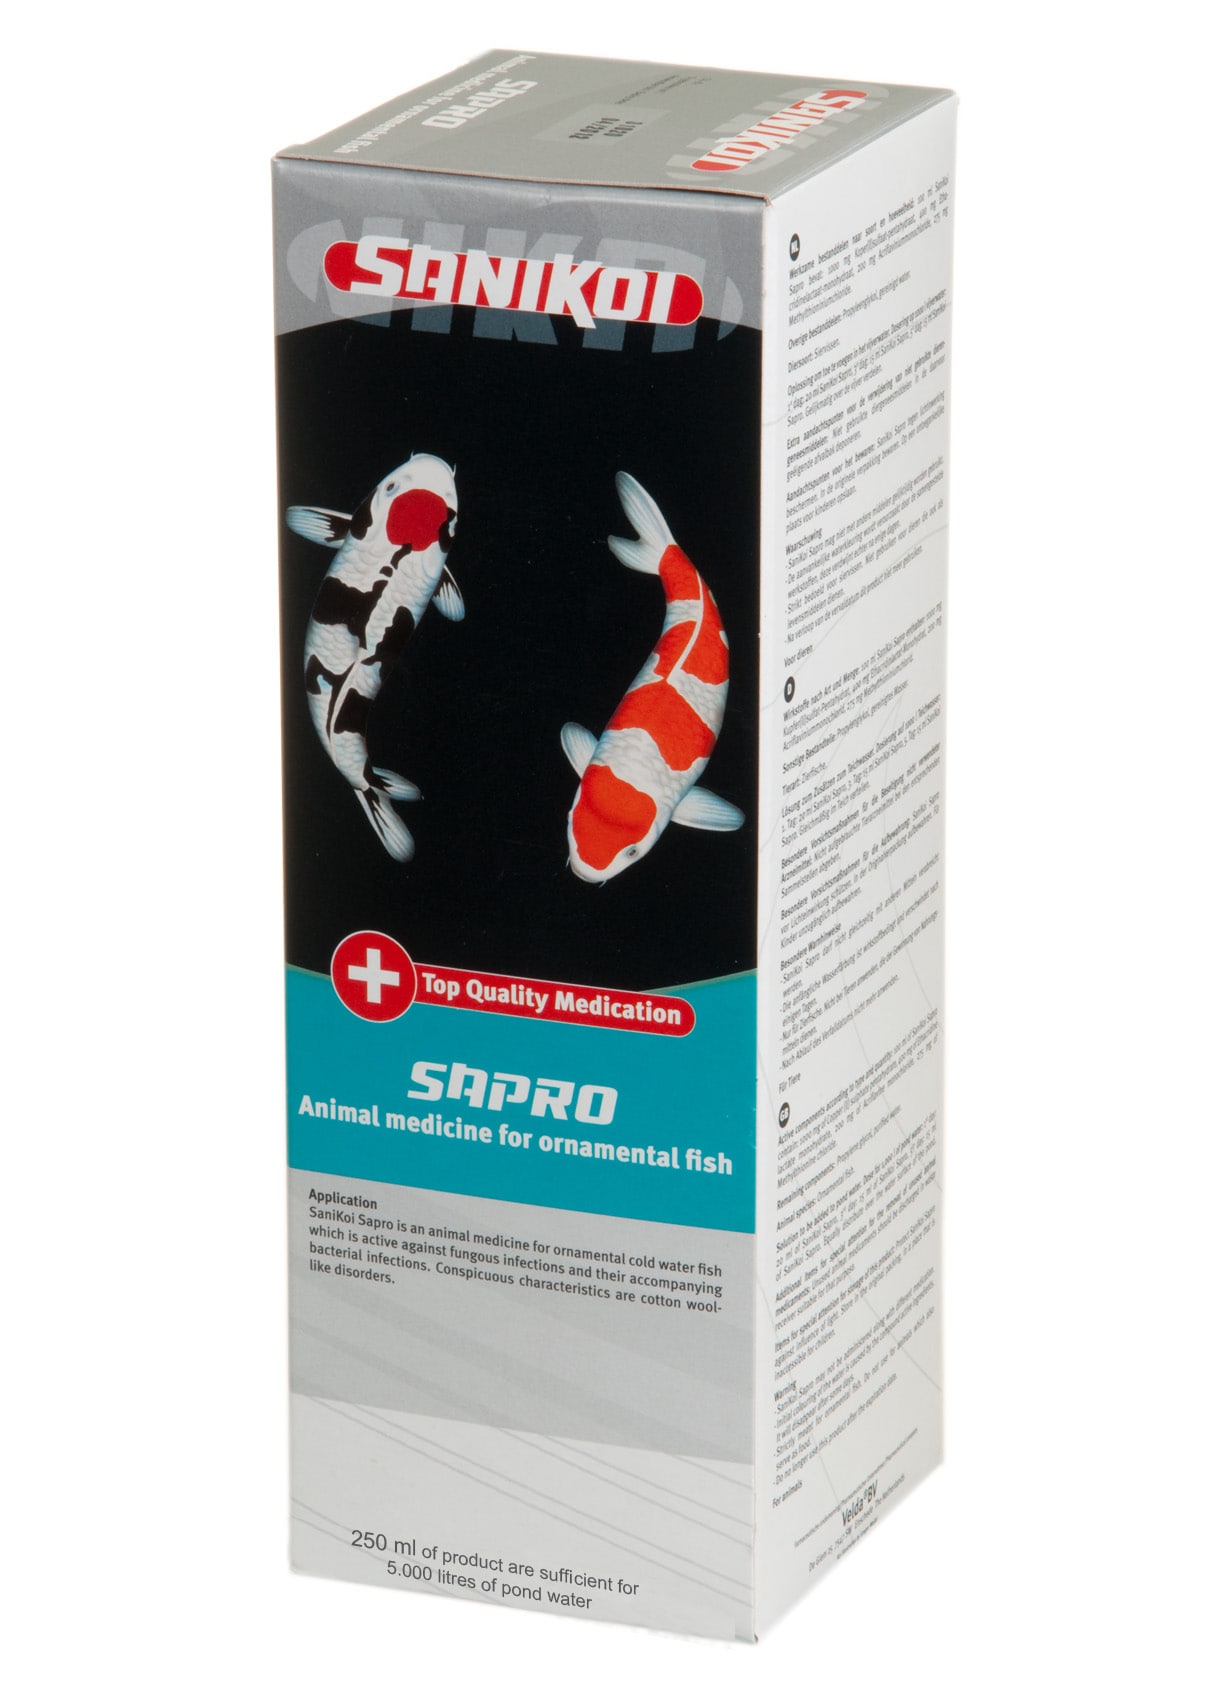 SANIKOI Sapro 250 ml médicament pour poissons de bassin contre les infections fongiques et bactériennes secondaires - Traite jusqu\'à 5000 L